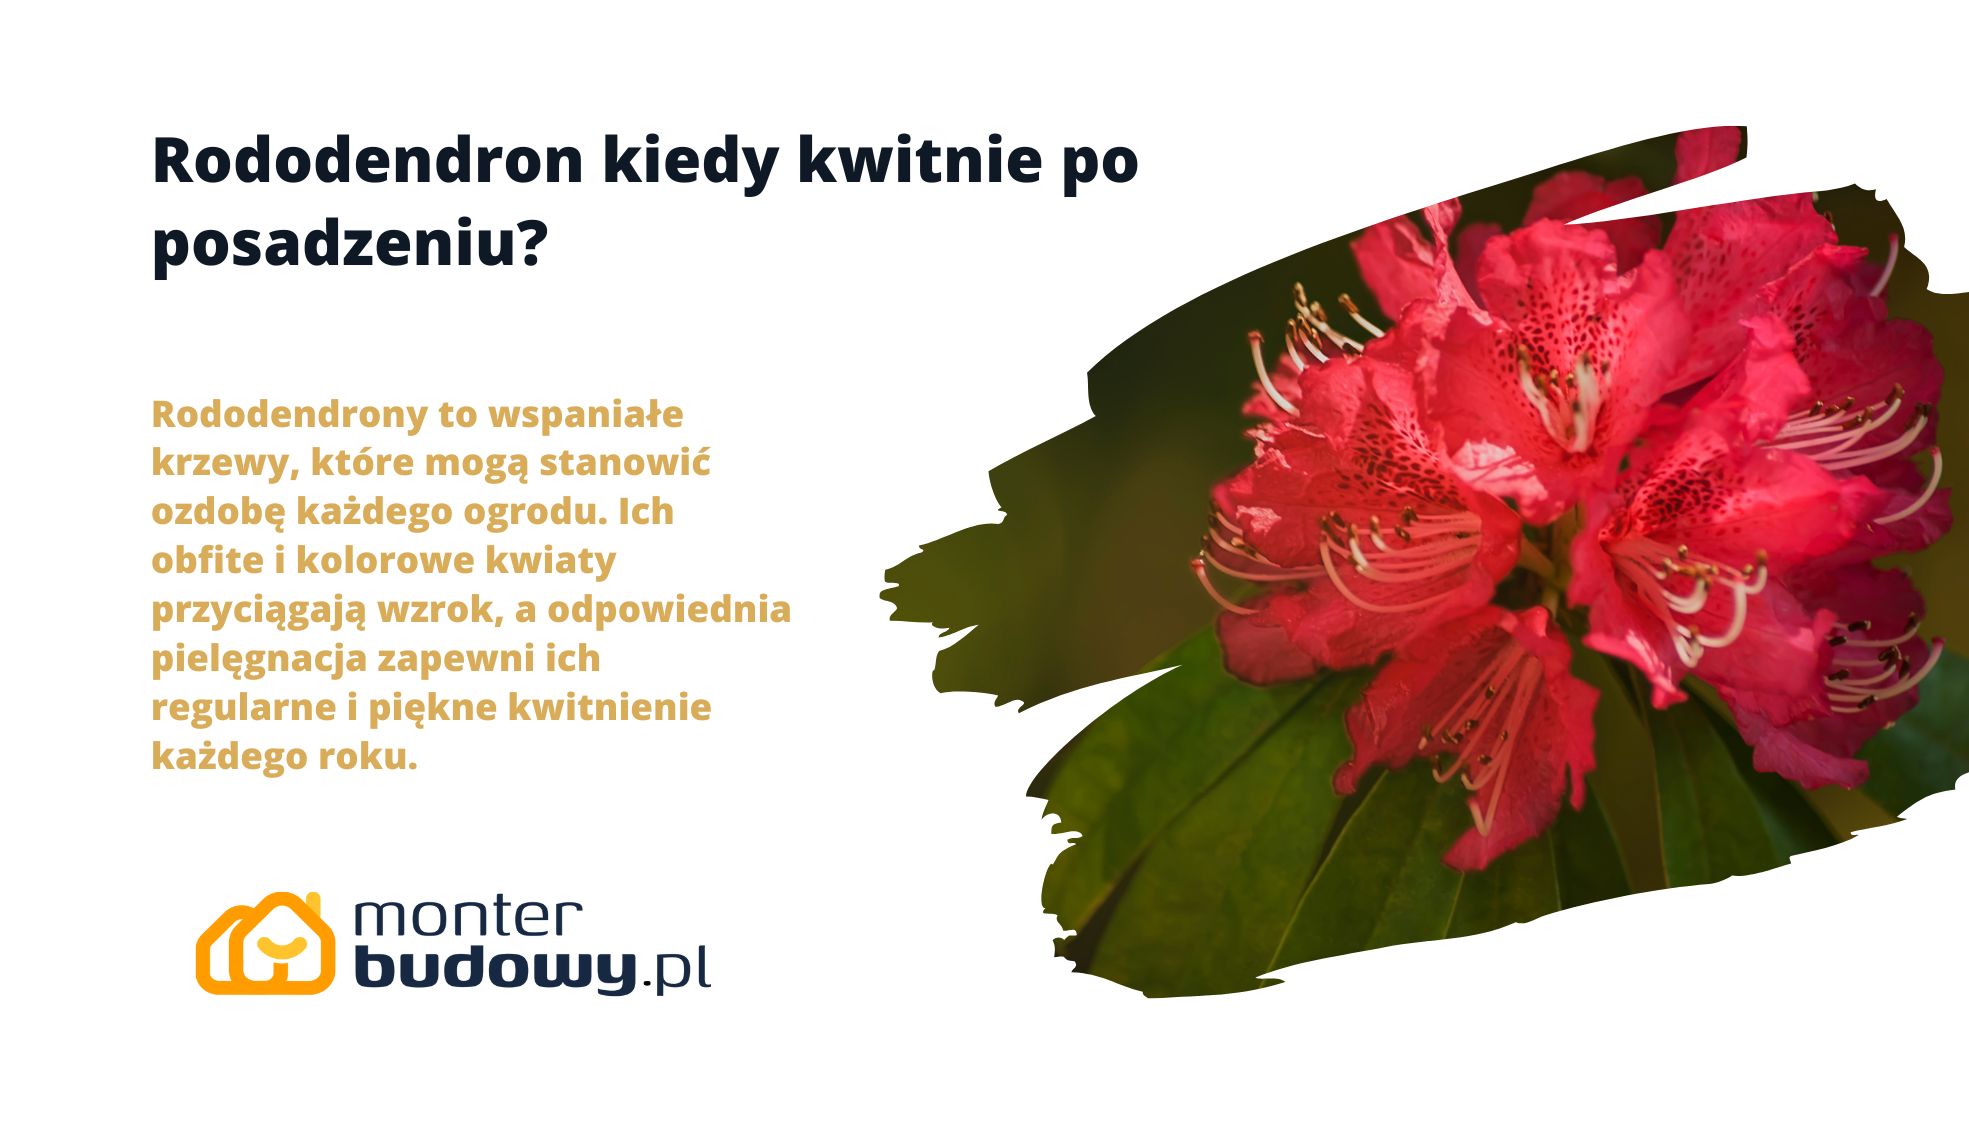 Rododendron kiedy kwitnie po posadzeniu